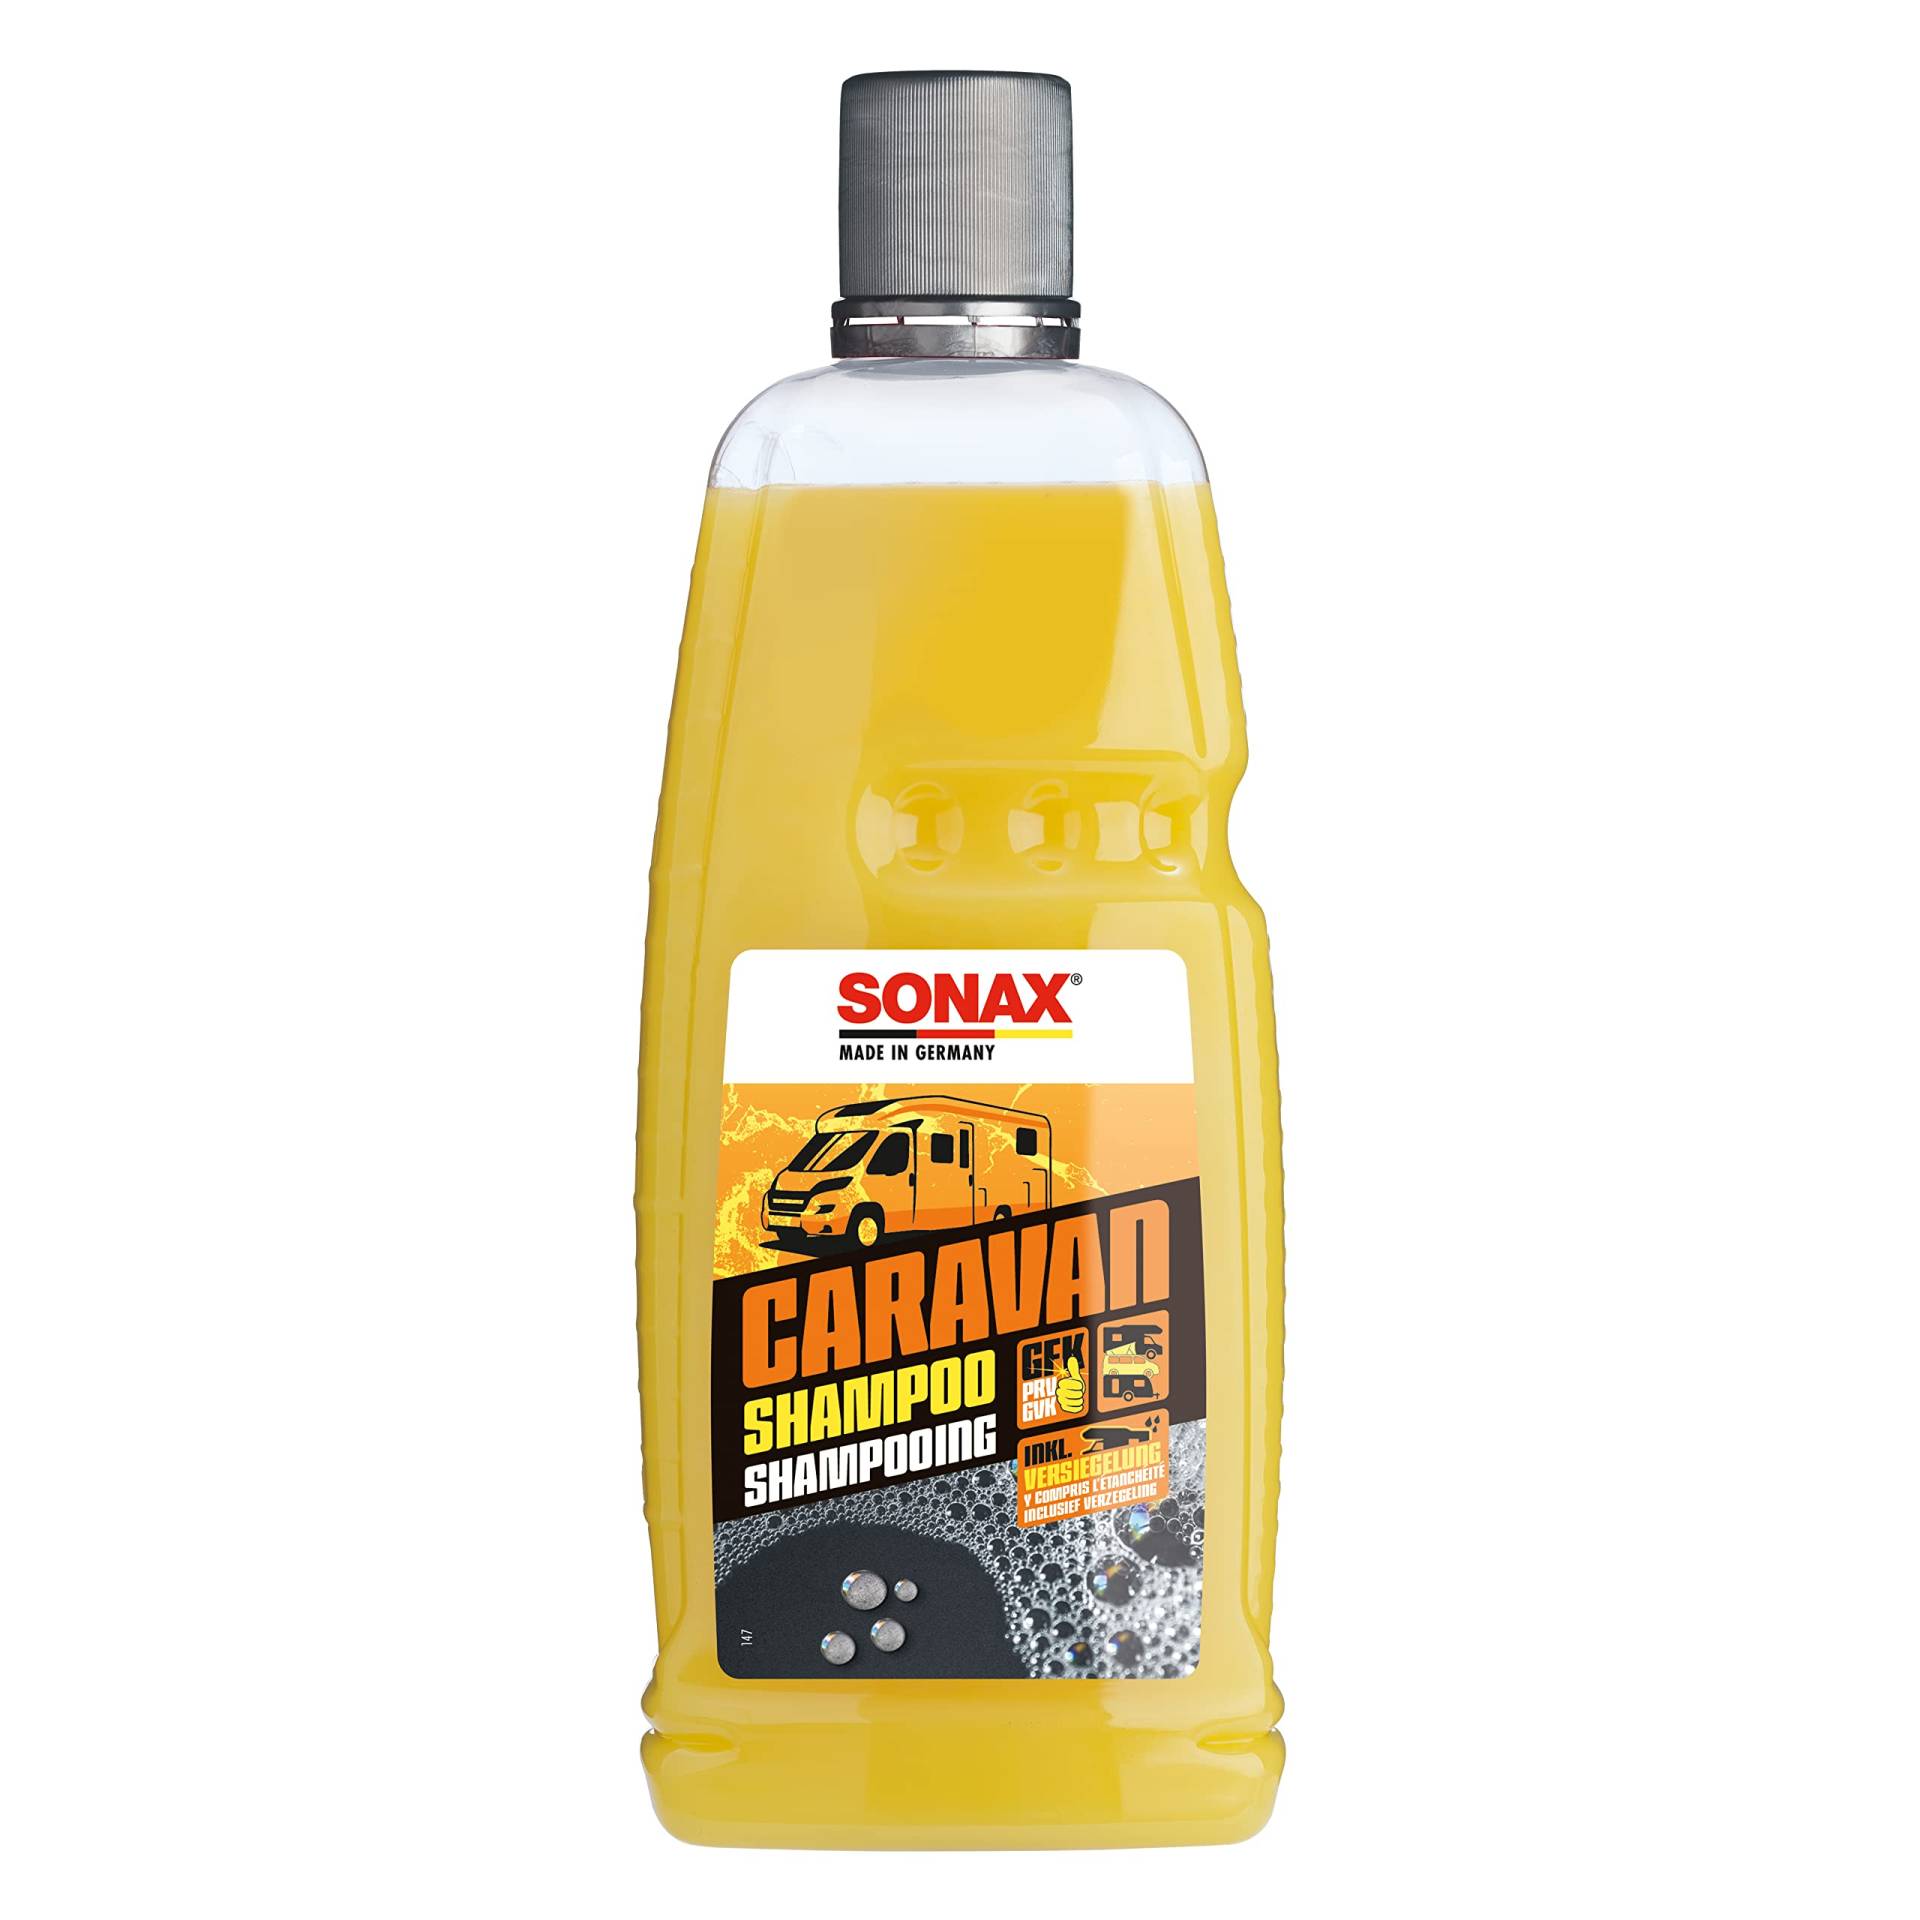 SONAX CARAVAN Shampoo (1 Liter) Reinigungskonzentrat mit Wachsanteilen, für alle Oberflächen an Caravan/Bus/Wohnmobil/Wohnwagen | Art-Nr. 07133000 von SONAX